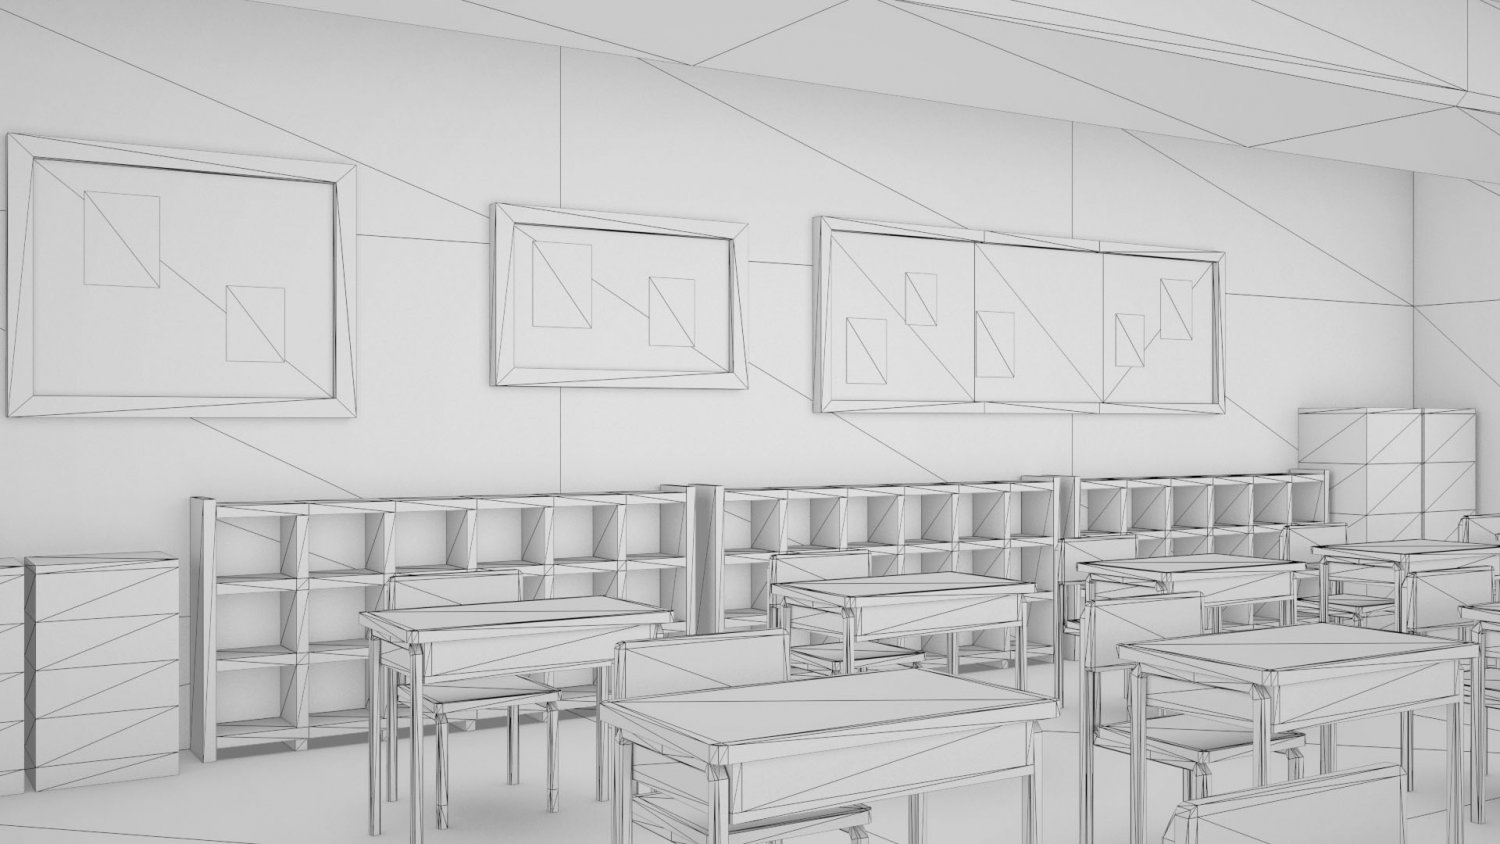 Anime Classroom  Anime classroom, Classroom interior, Classroom  architecture